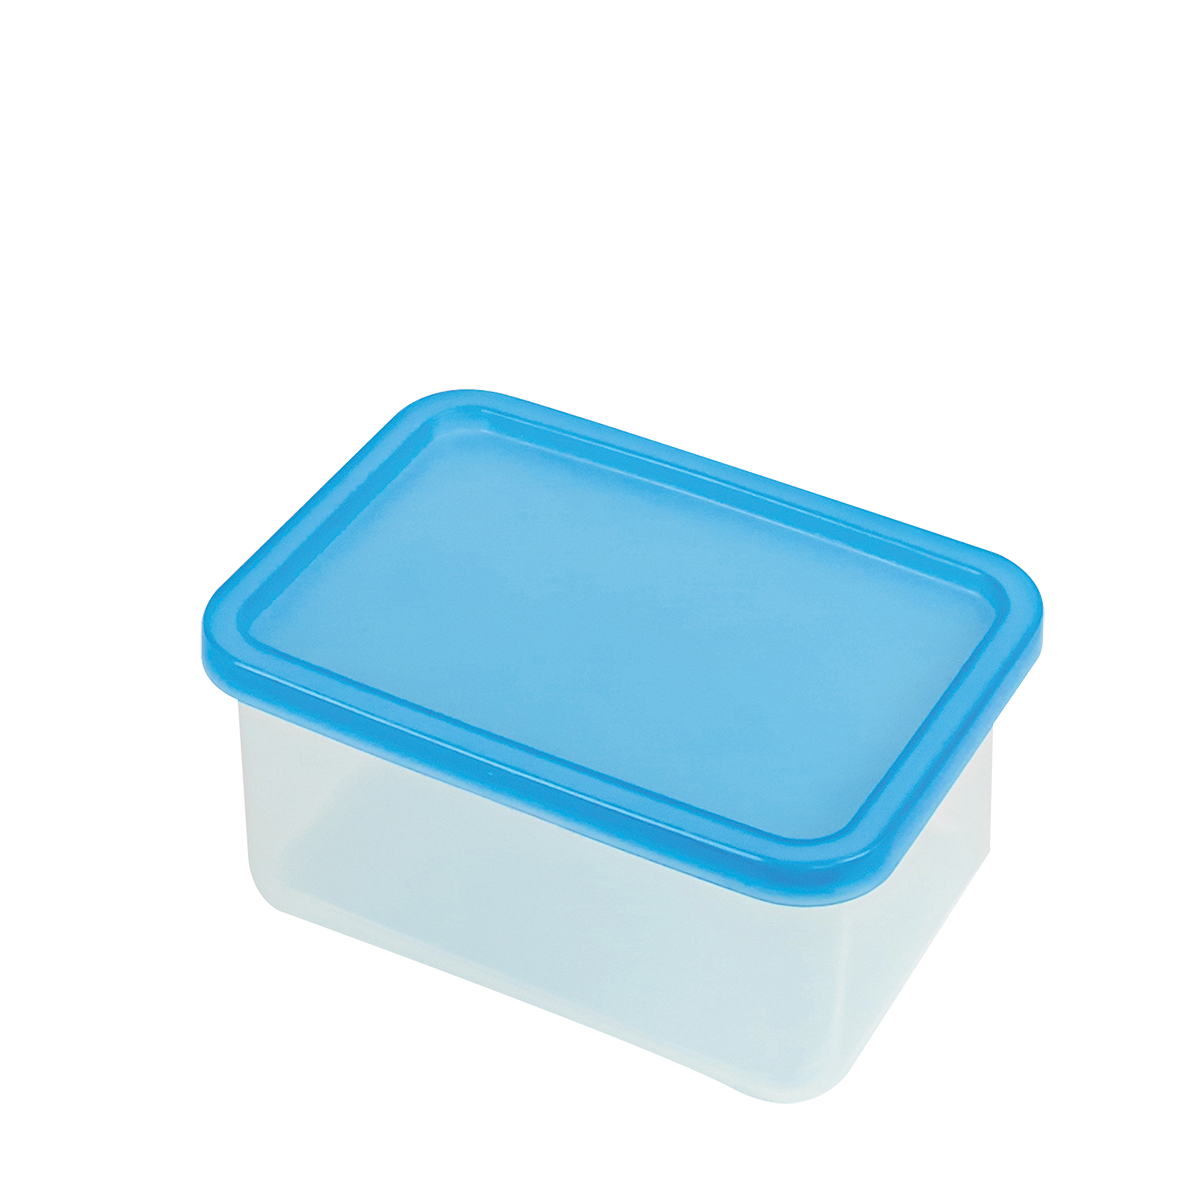 Boîte hermétique translucide + couvercle bleu